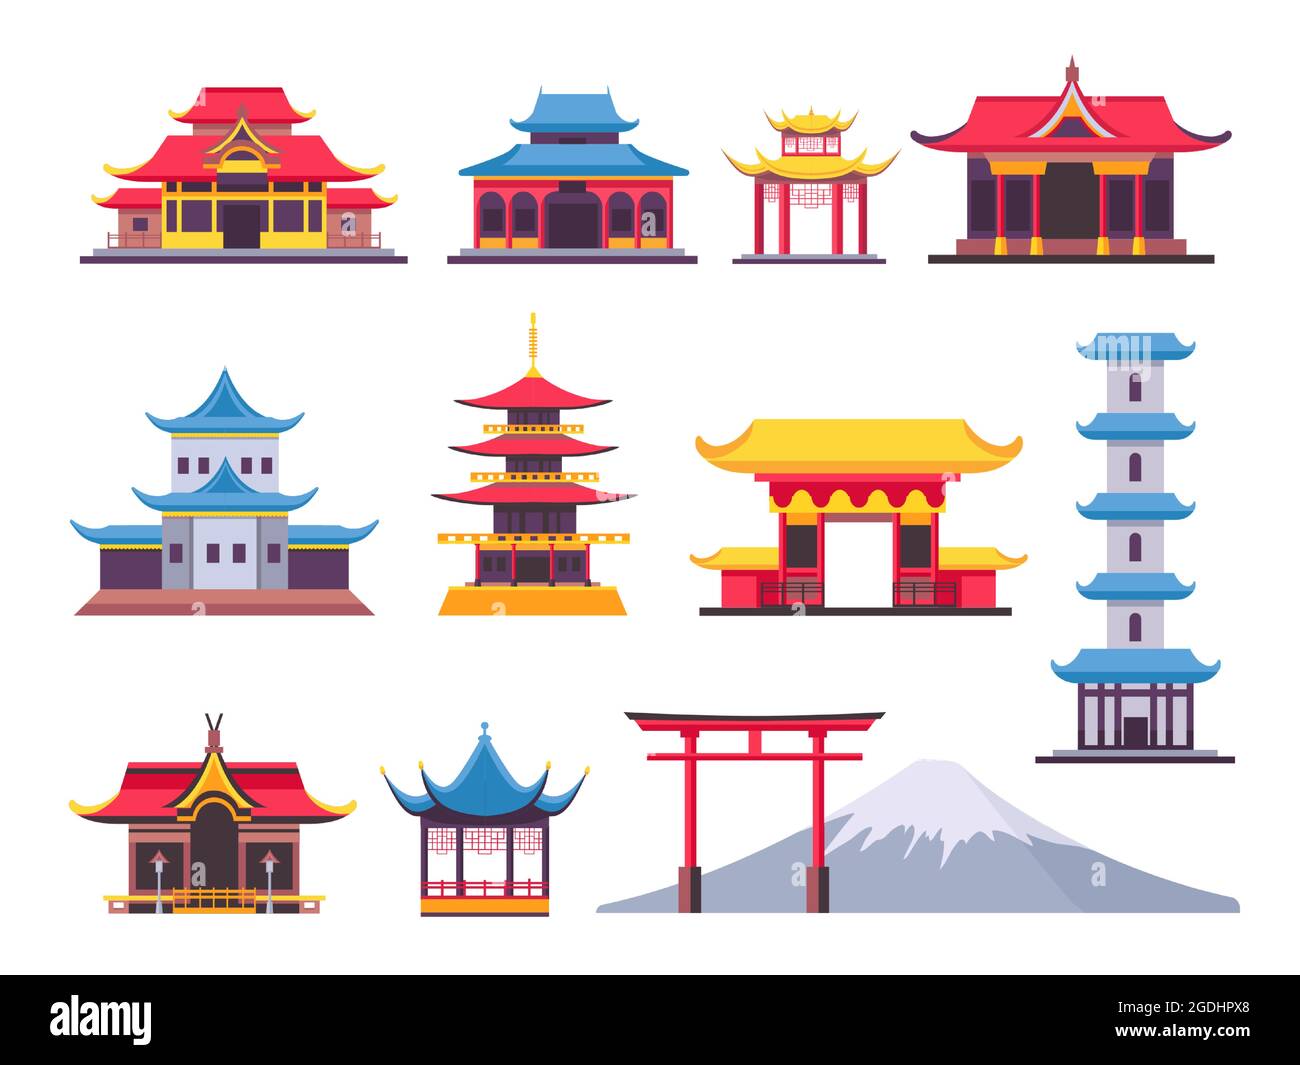 Flache japanische Gebäude, alte Pagode und kulturelles Wahrzeichen. Asiatischer Berg fuji. Chinesische Türme, Tempel und traditionelle Hausvektoren Stock Vektor